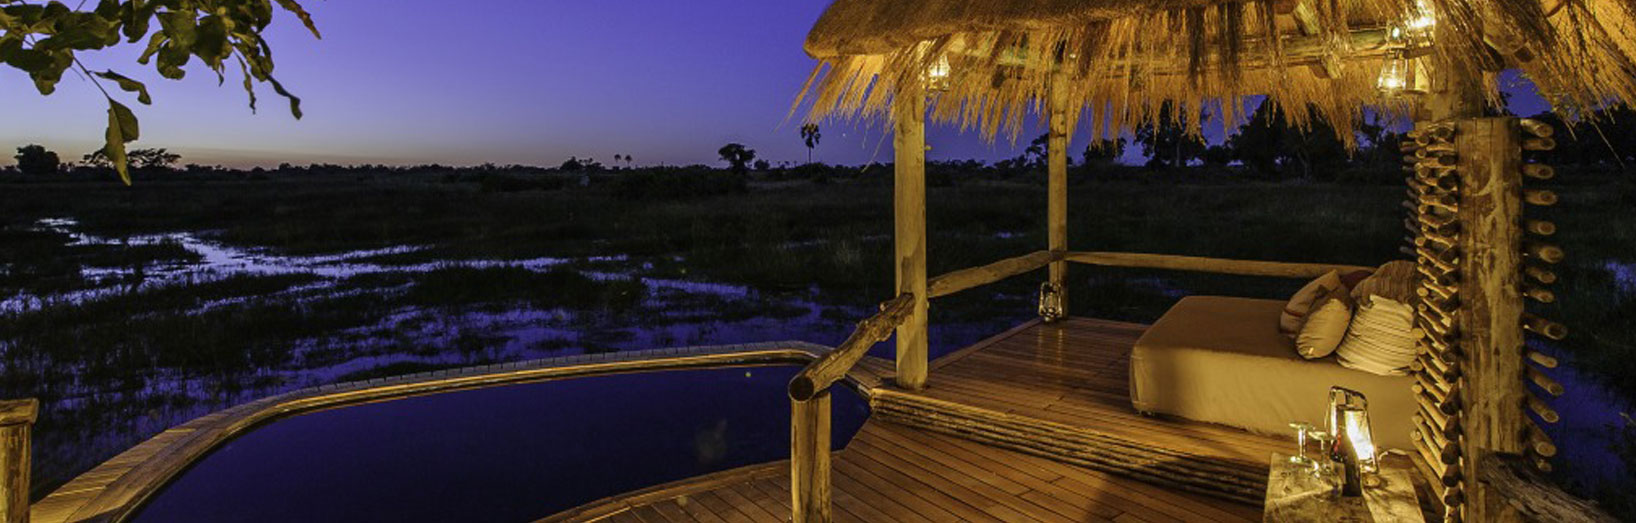 JPS Luxury Safaris Mombo Lodge